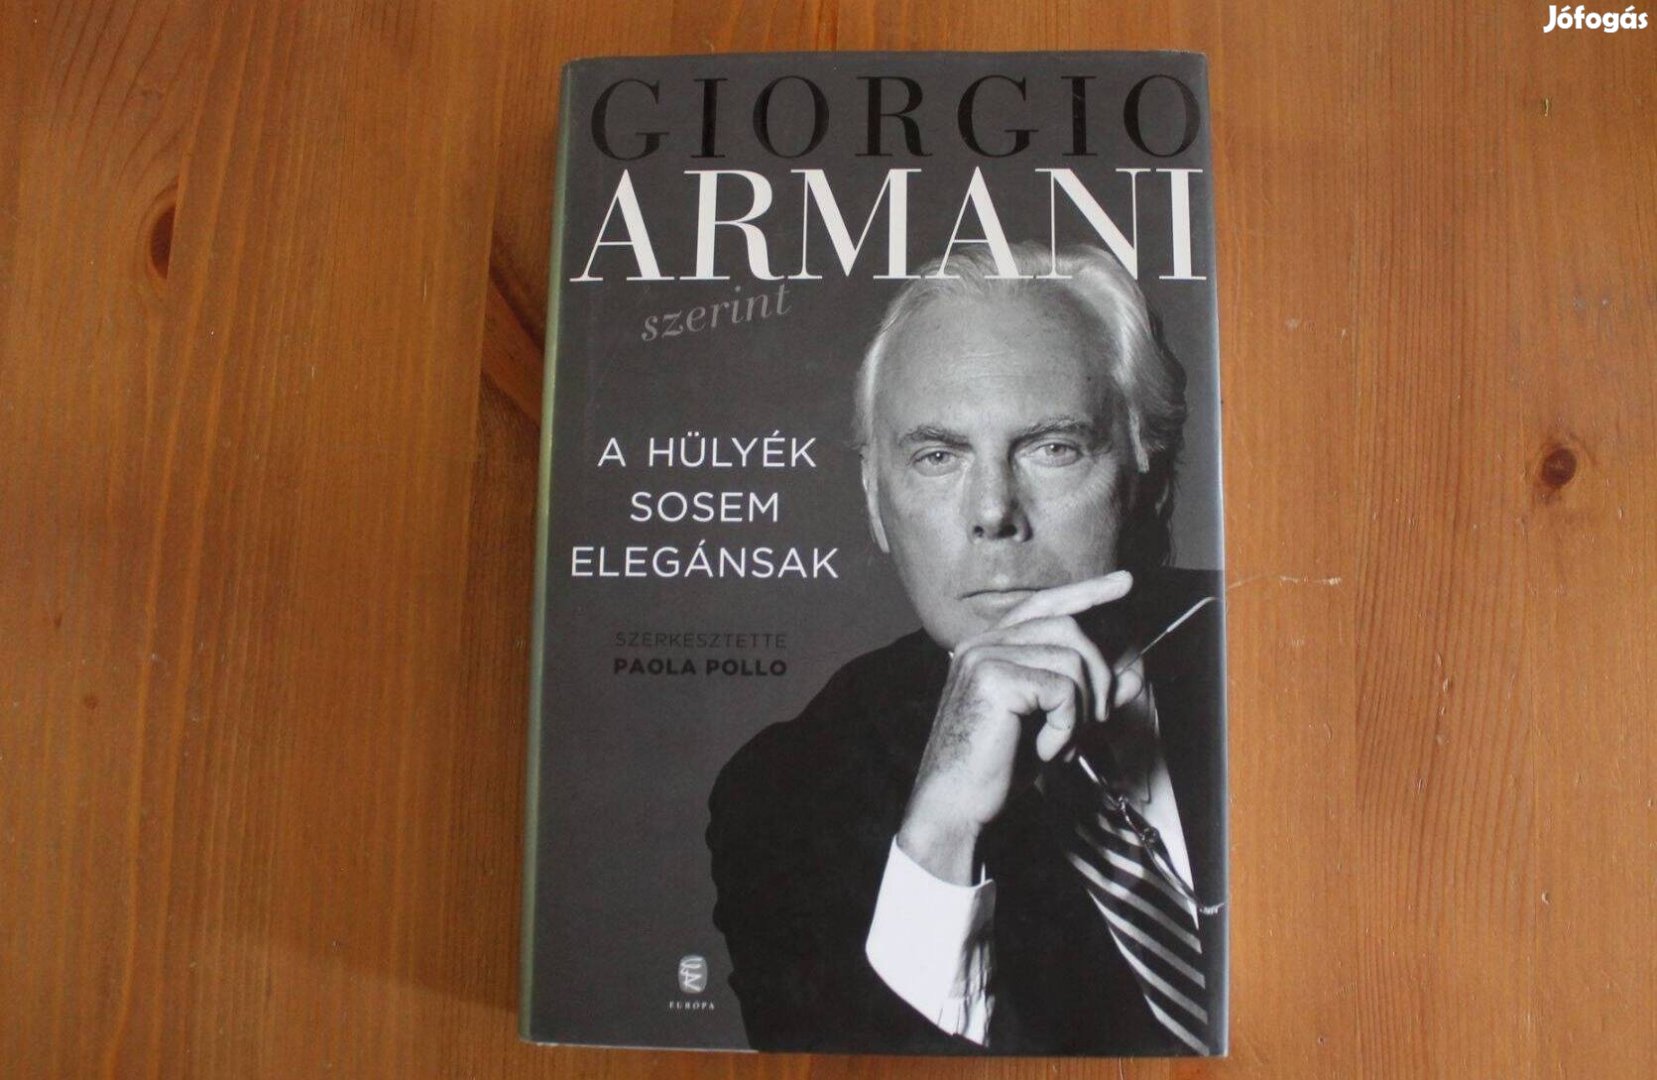 Giorgo Armani - A hülyék sosem elegánsak